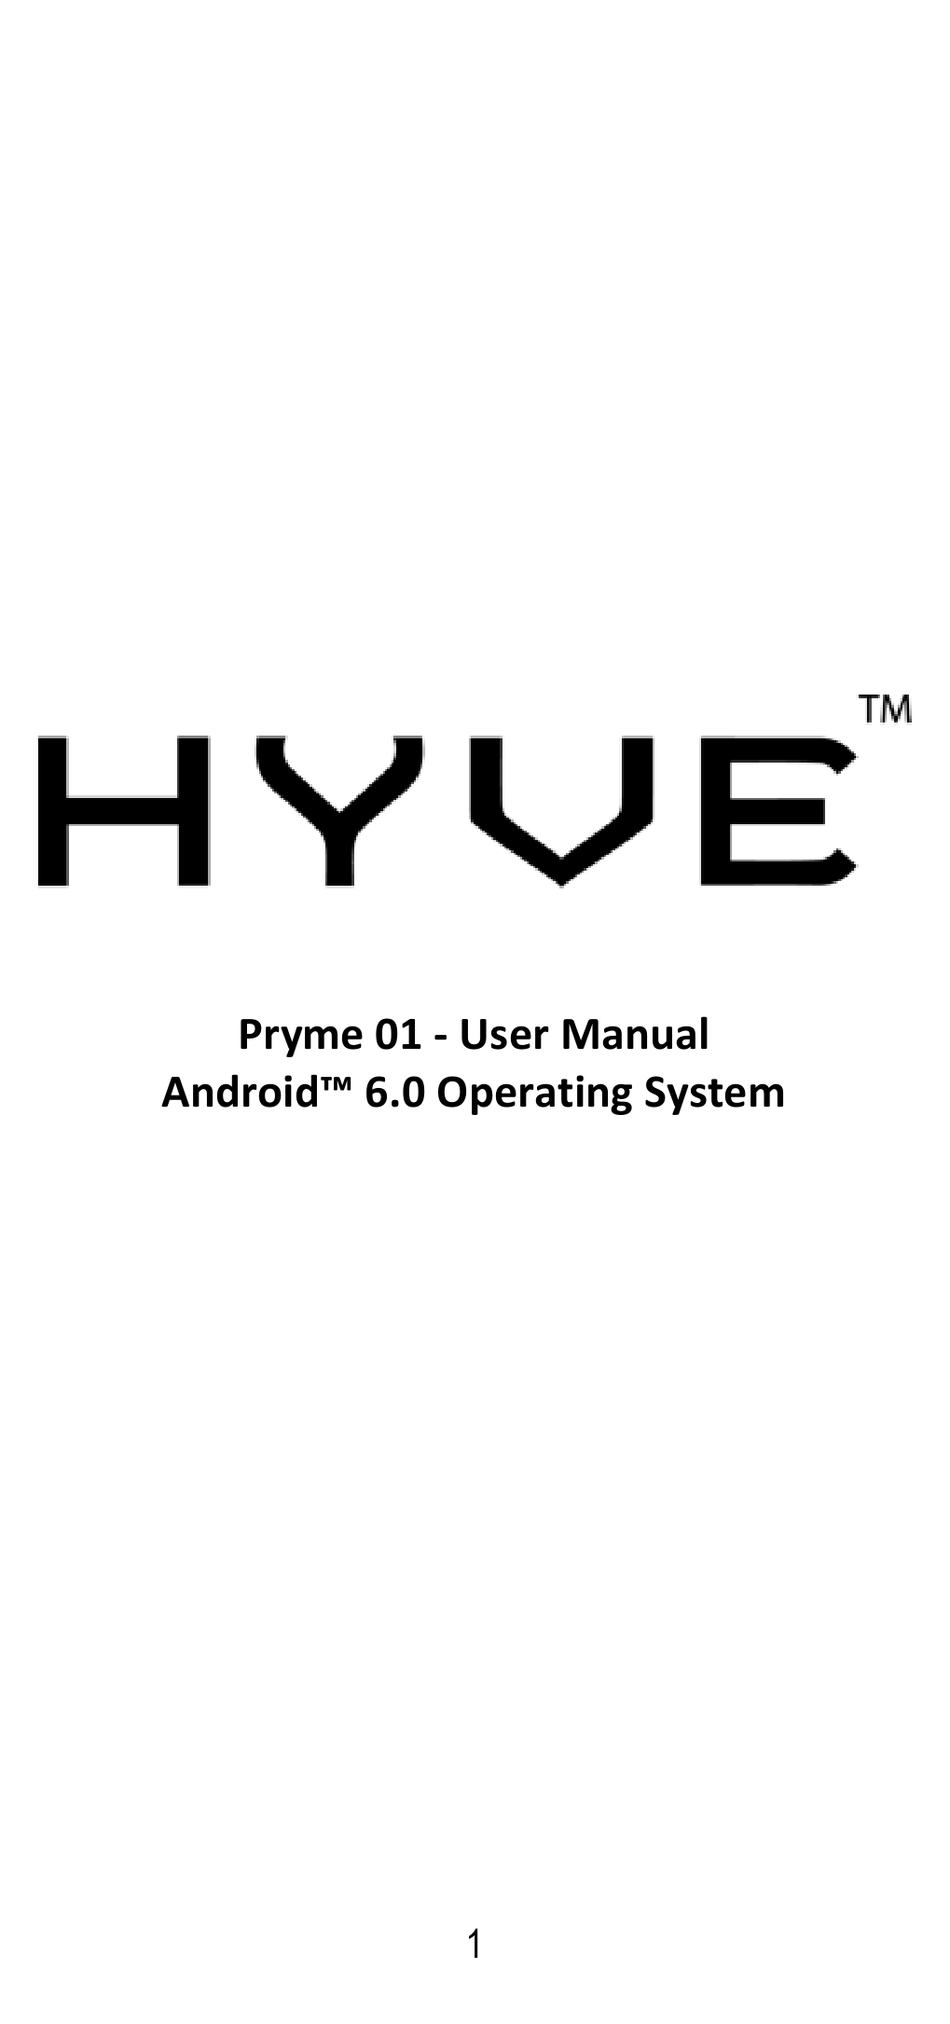 HYVE PRYME 01 USER MANUAL Pdf Download ManualsLib